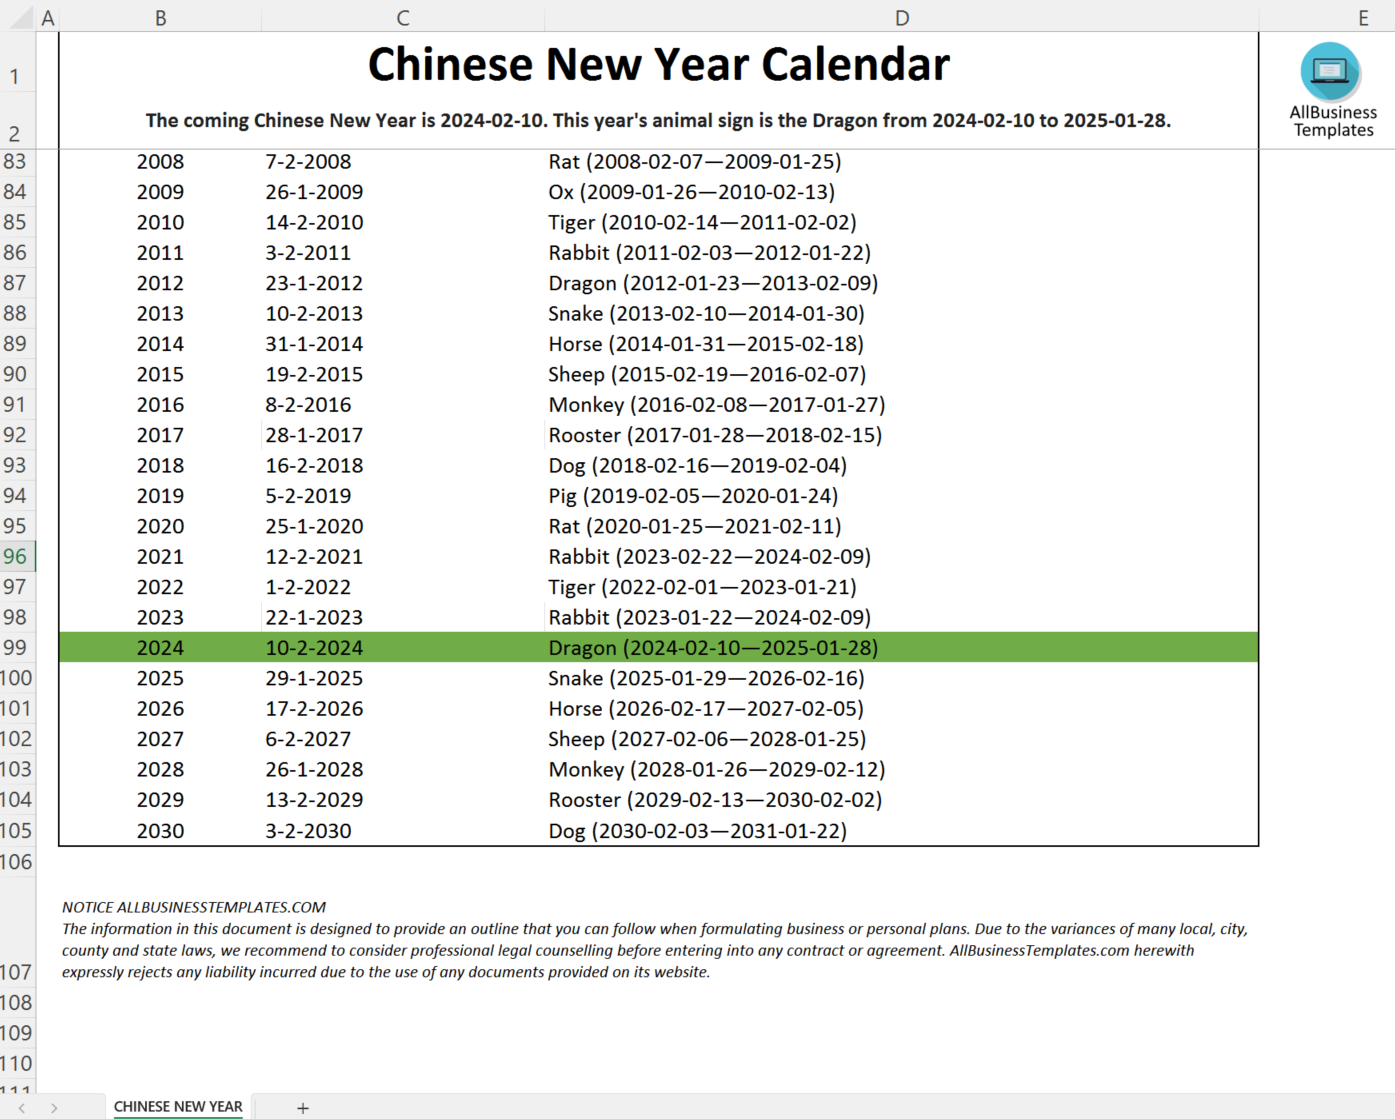 Chinese new year calendar 2024 main image